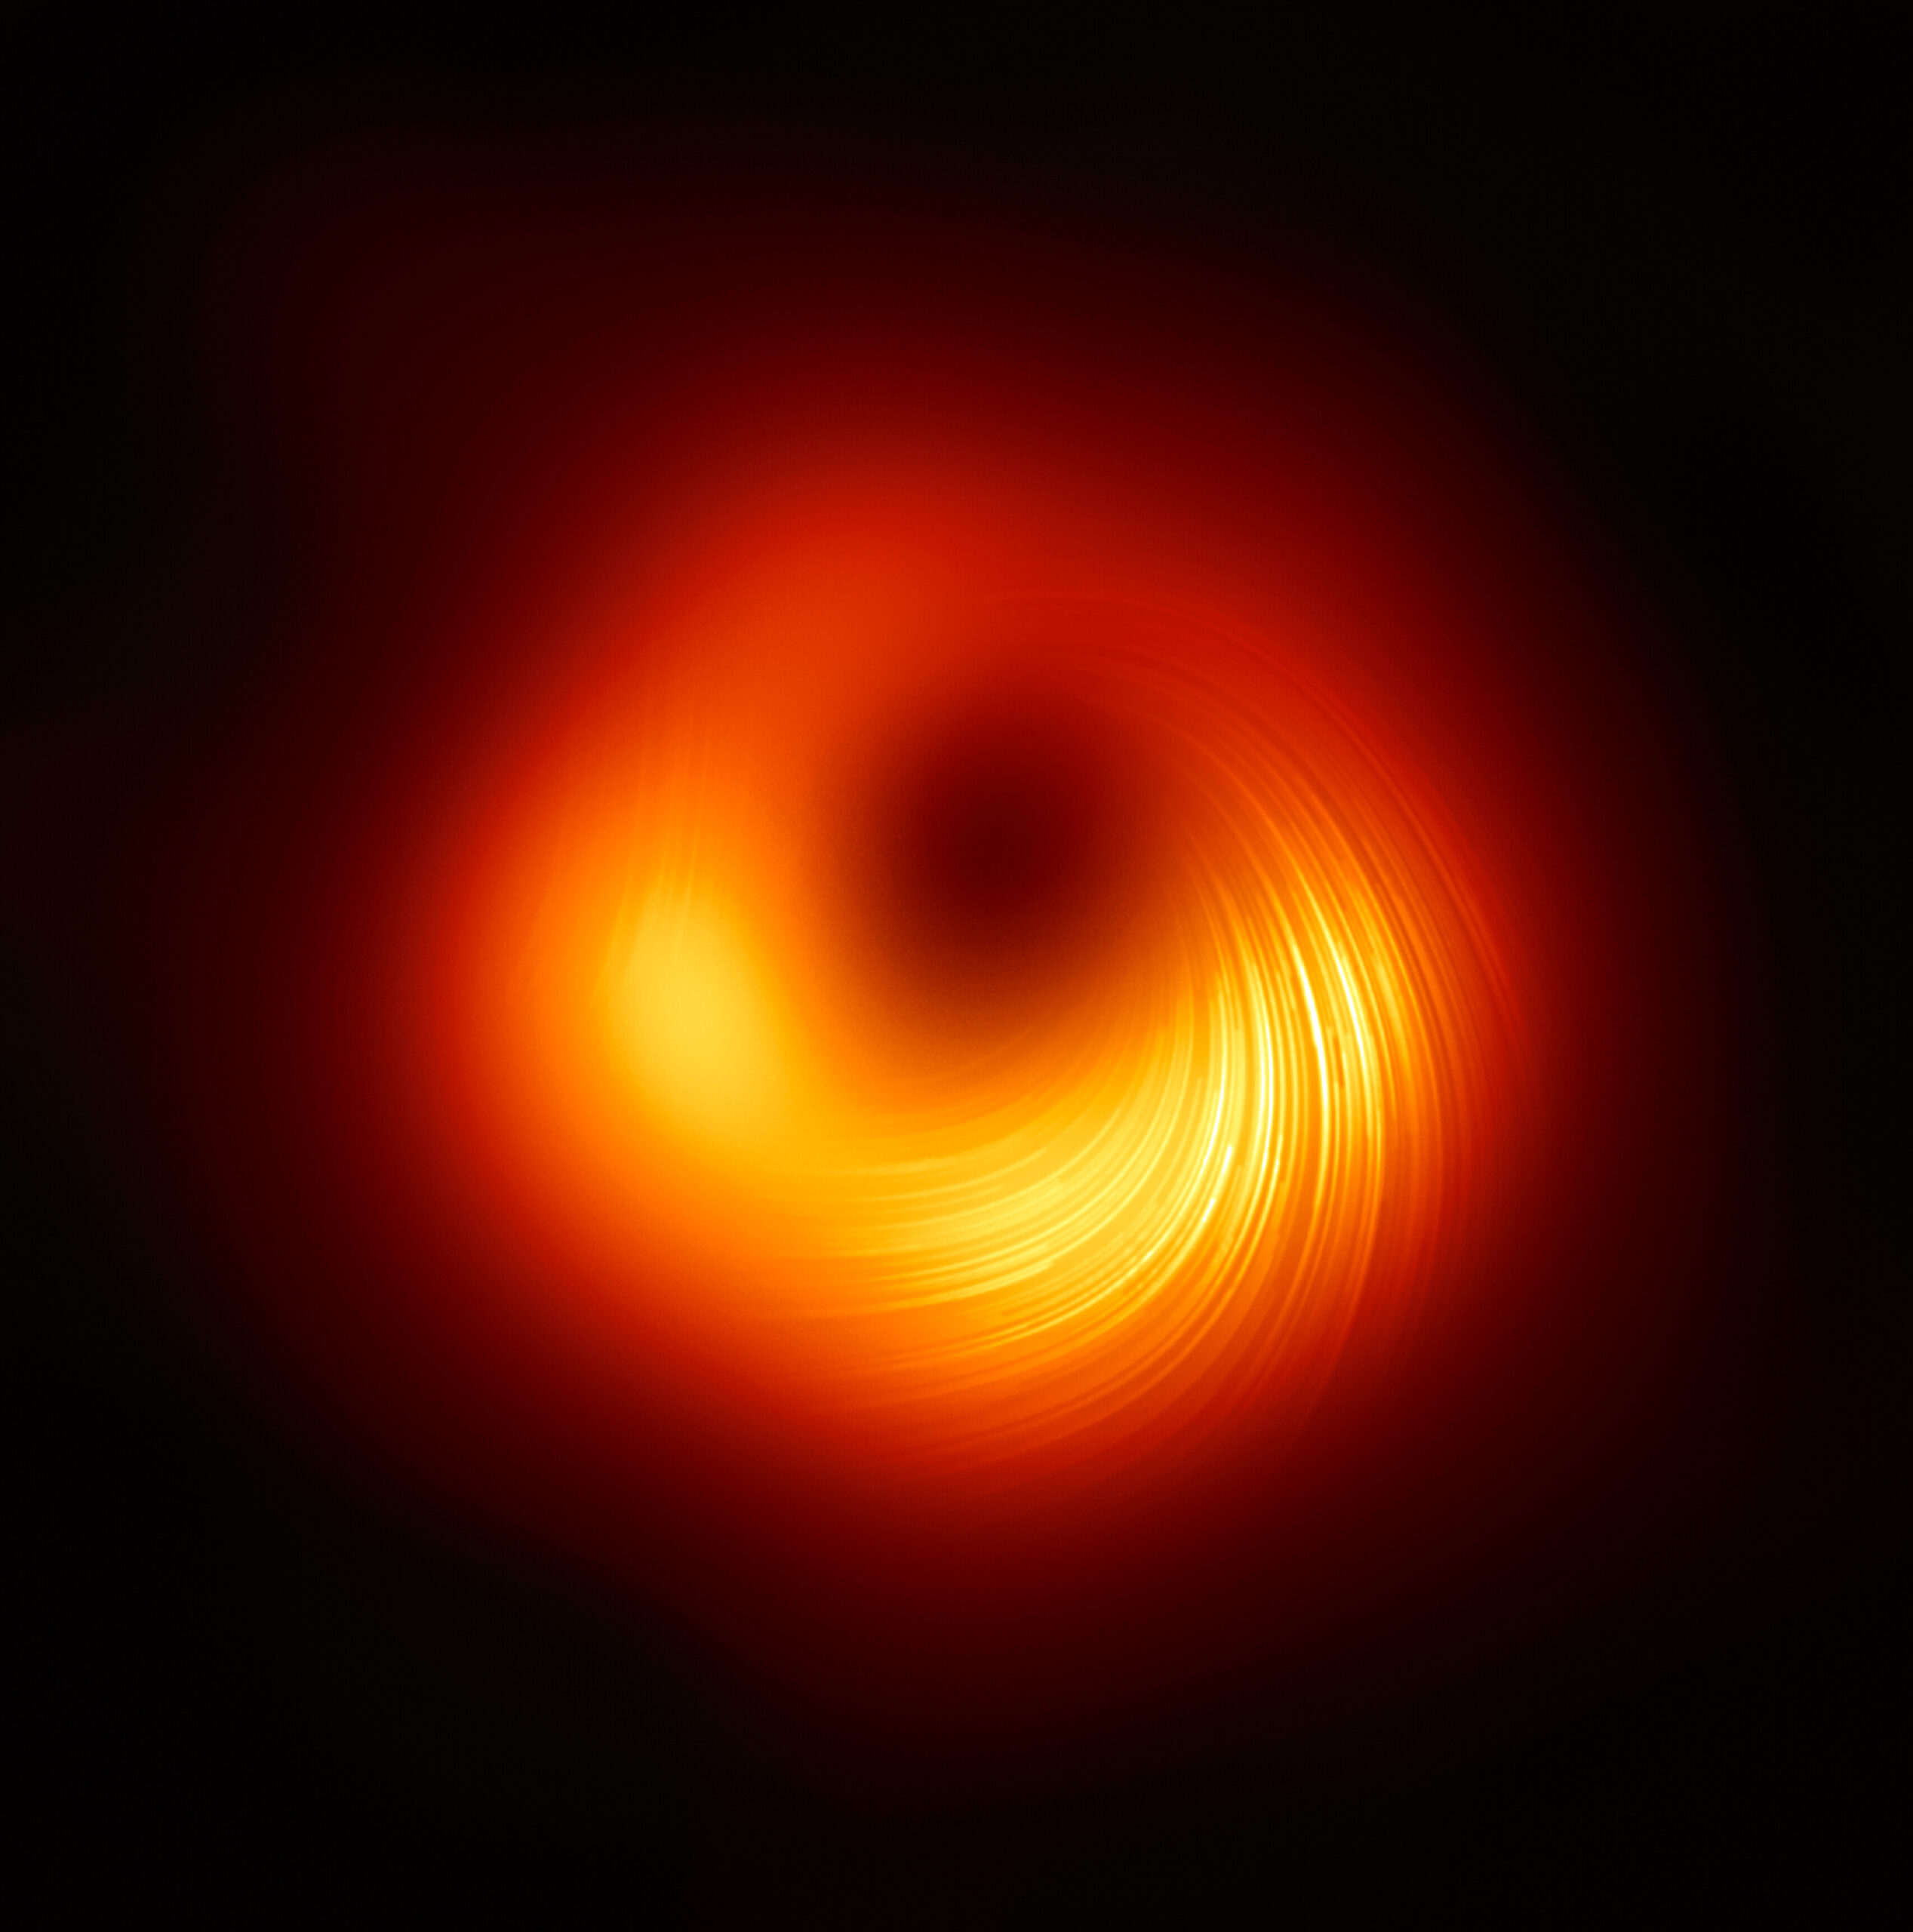 Imagen del agujero negro supermasivo M87* en luz polarizada